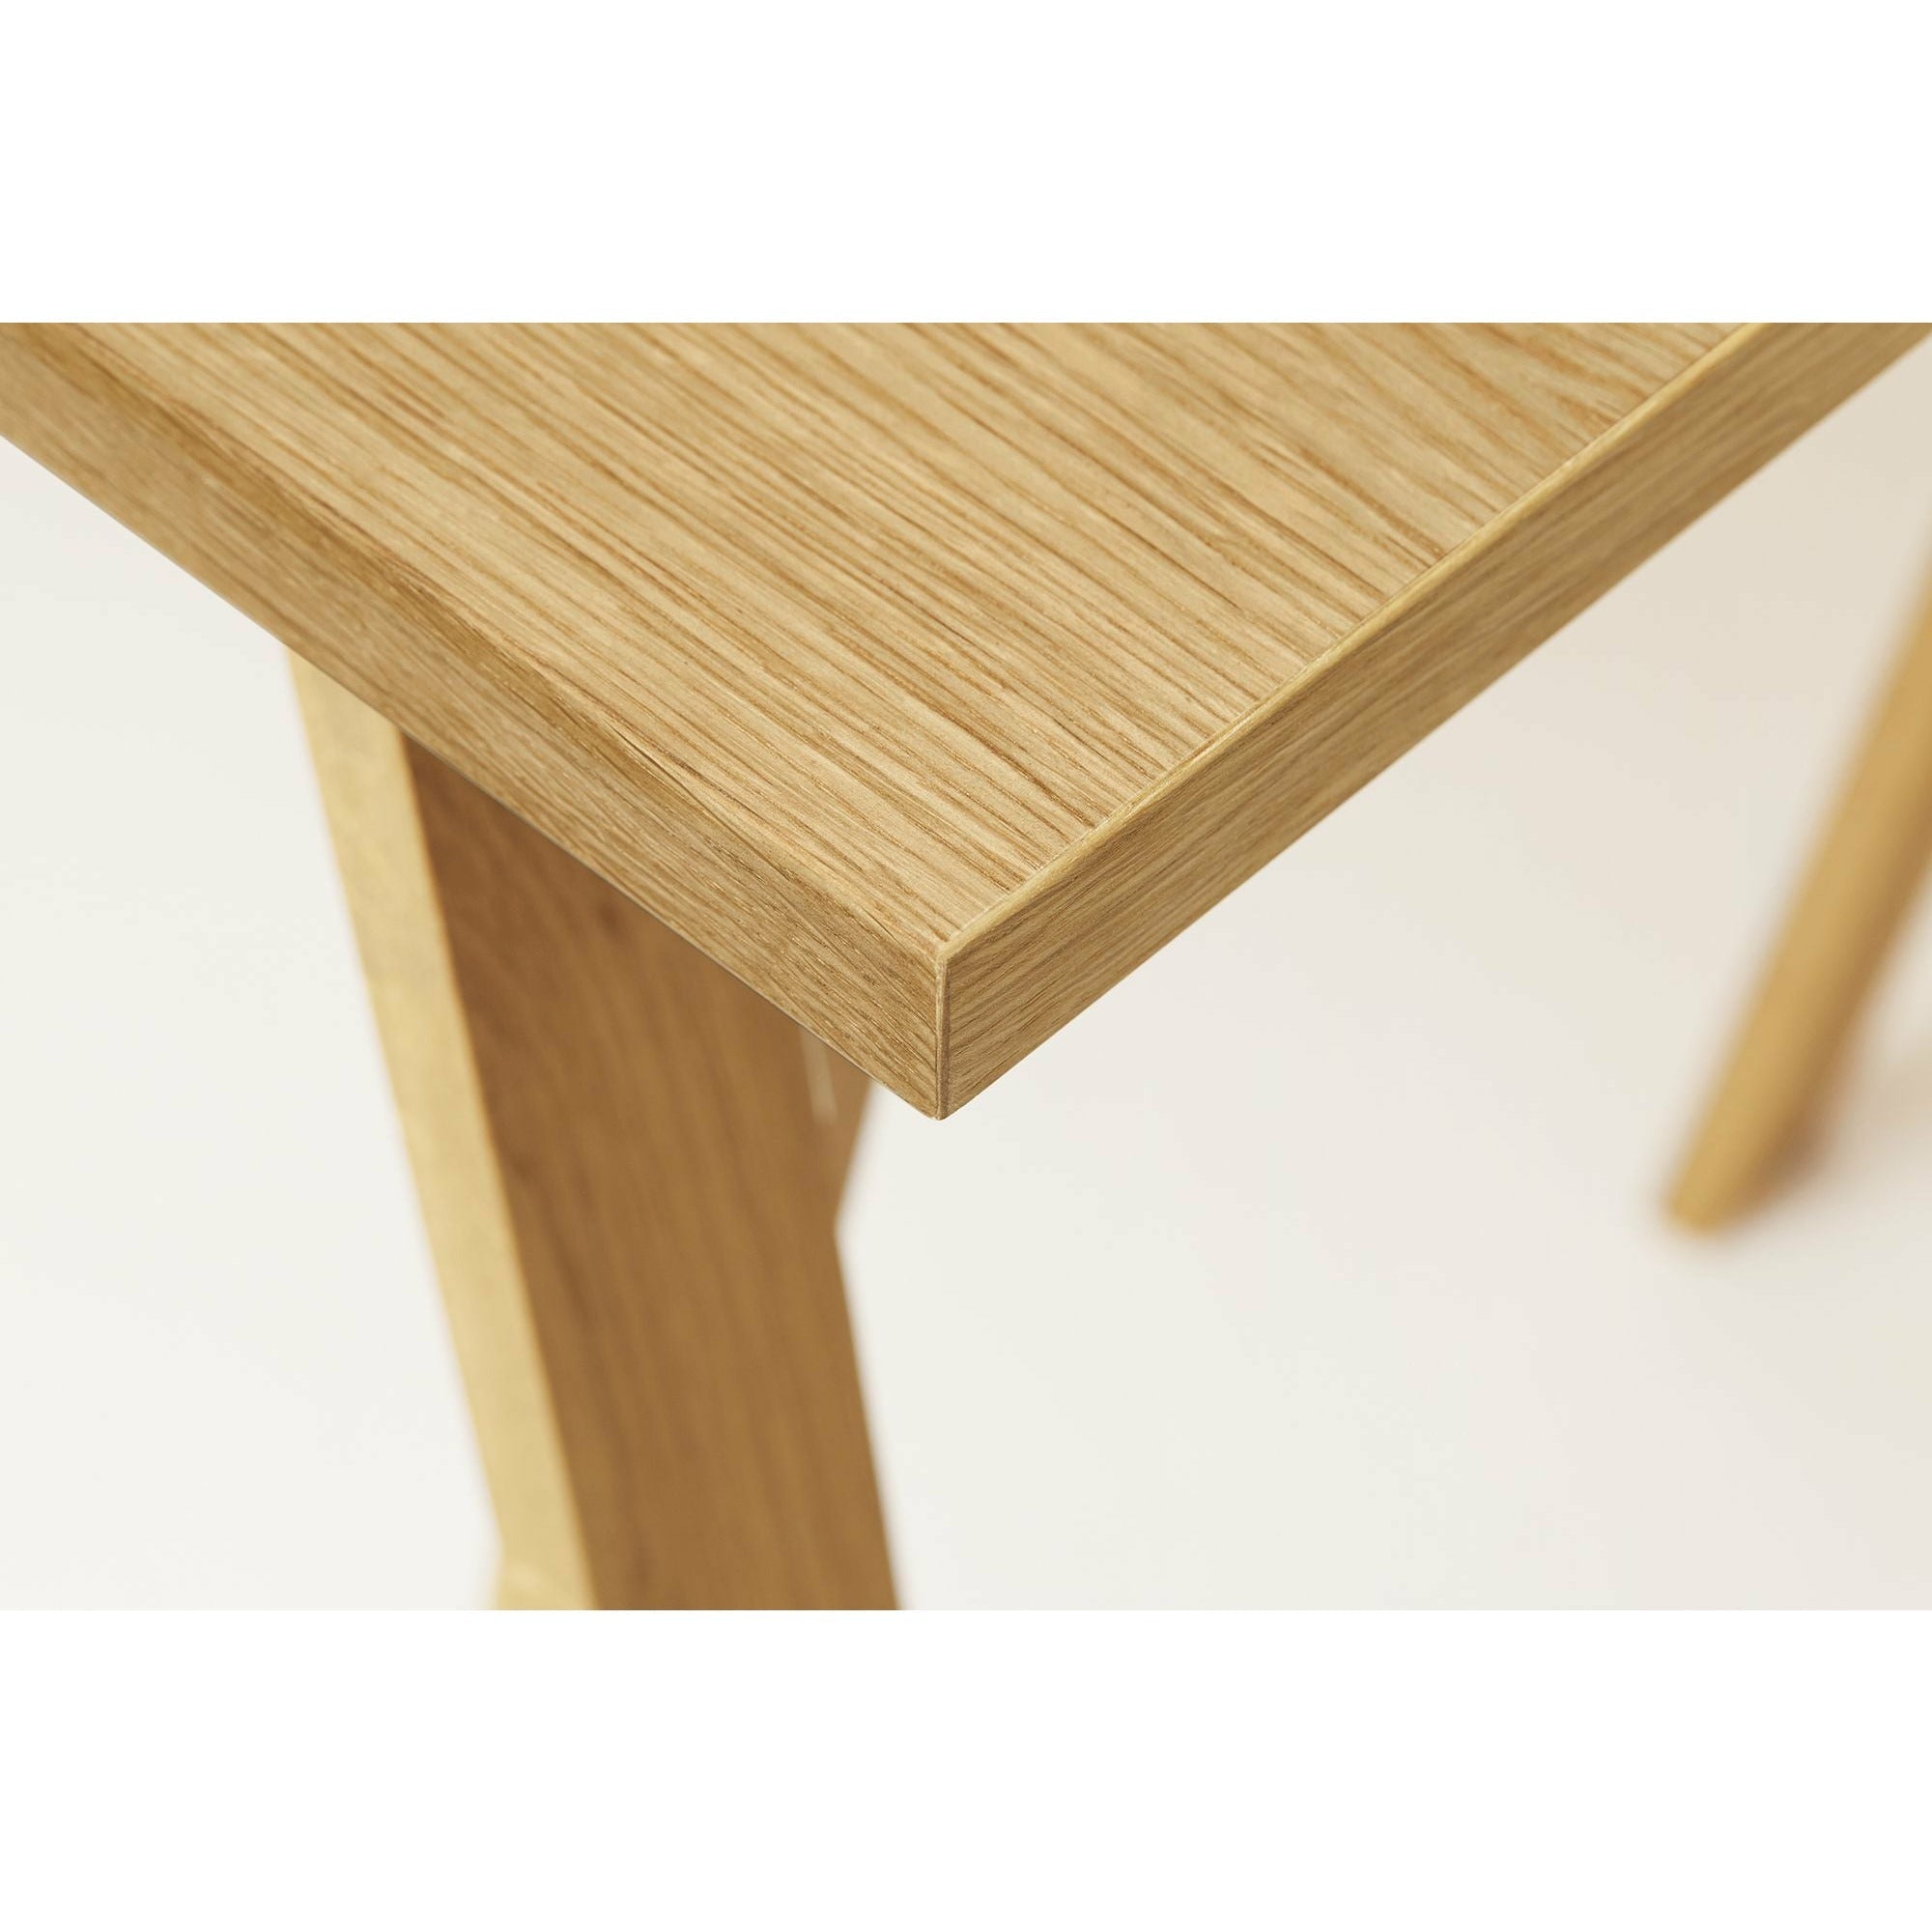 Form&Refine Linjär Tischplatte 205x88 cm, Eiche